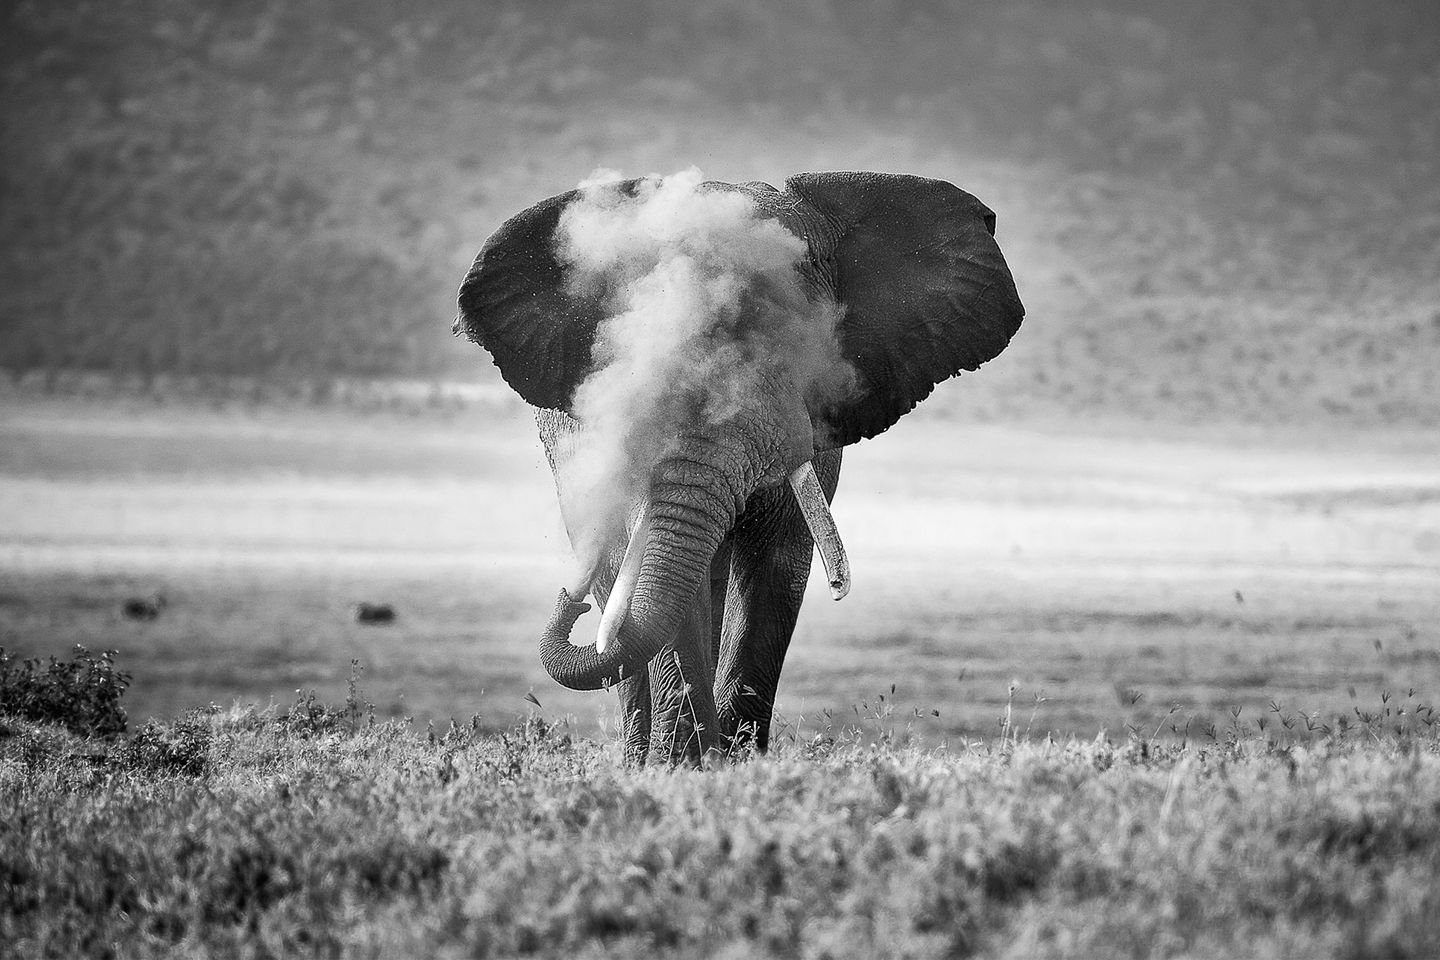 Was wie eine Rauchwolke scheint, ist Sand, den der Elefant in die Luft bläst. Nach einem Schlammbad schlenderte er durch den Krater Ngorongoro, während der Fotograf im Serienmodus auf den Auslöser drückte. Einen zweiten Platz gewinnt Michael Snedic mit diesem Bild.